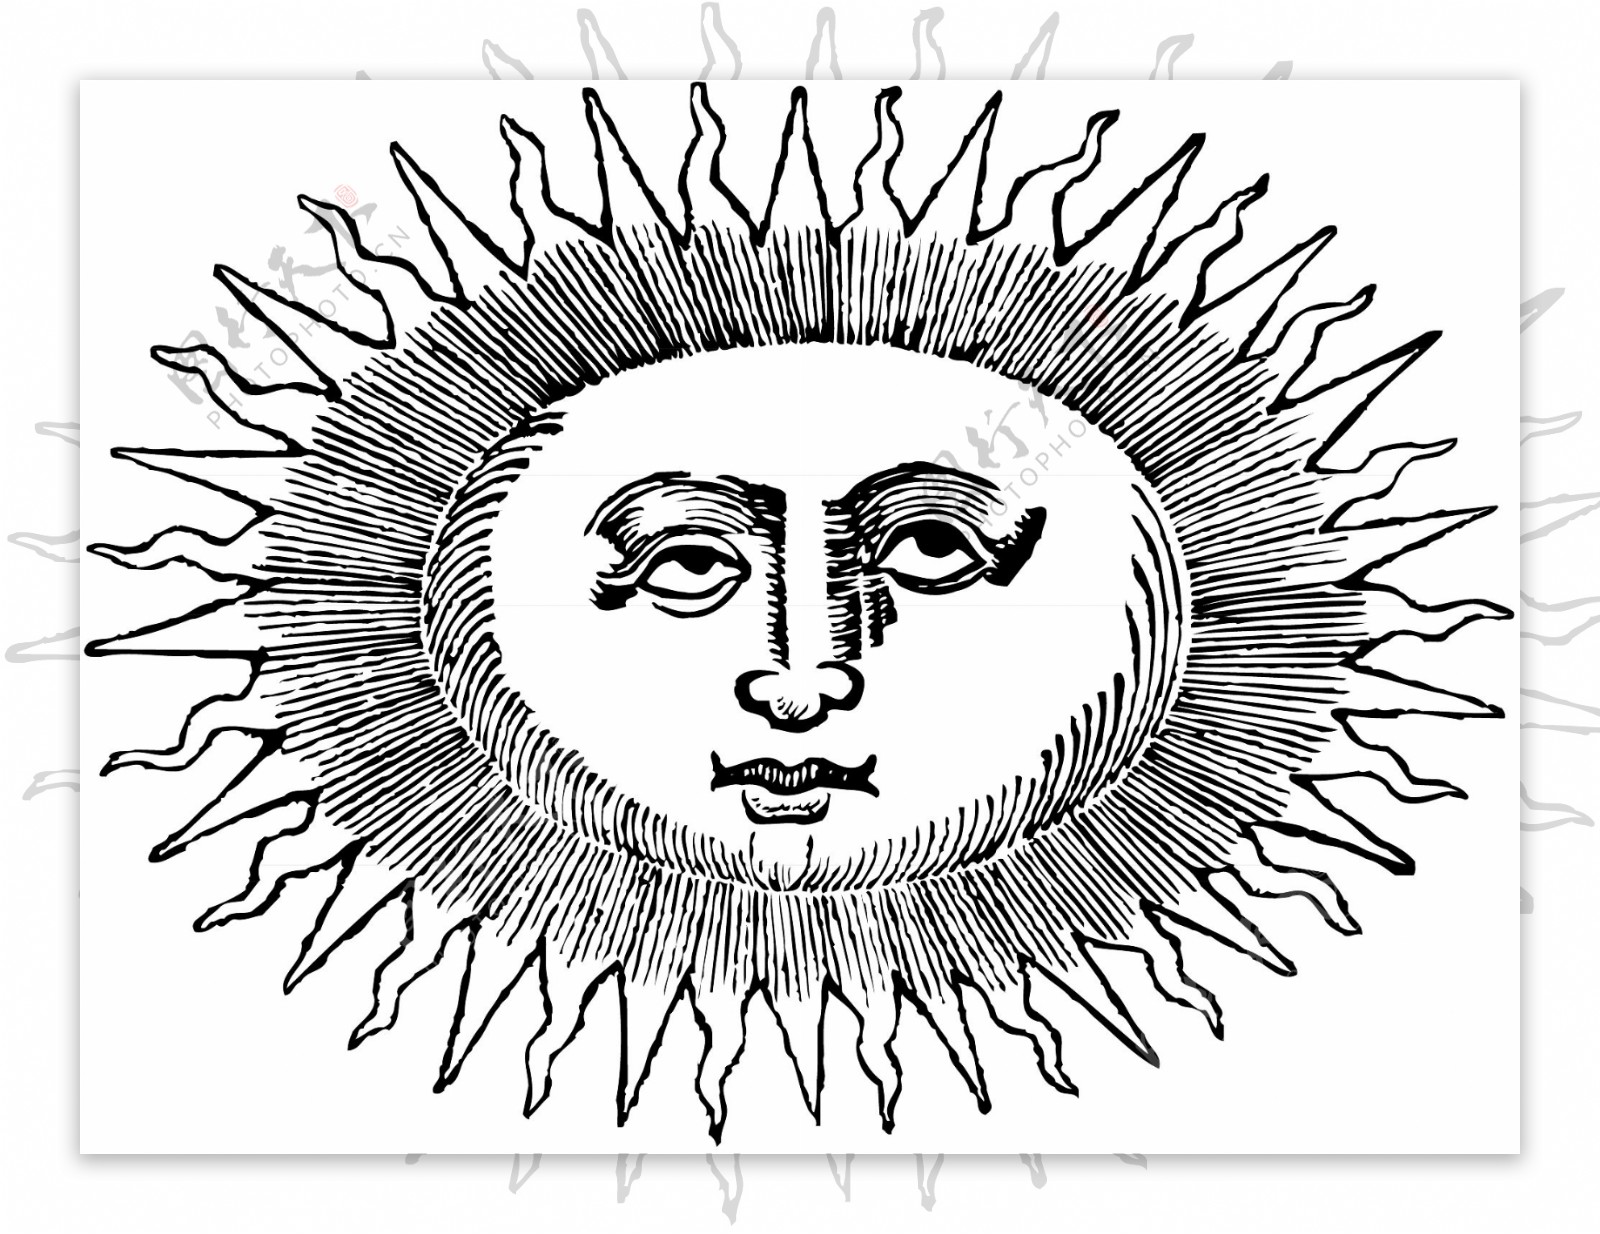 矢量太阳图标